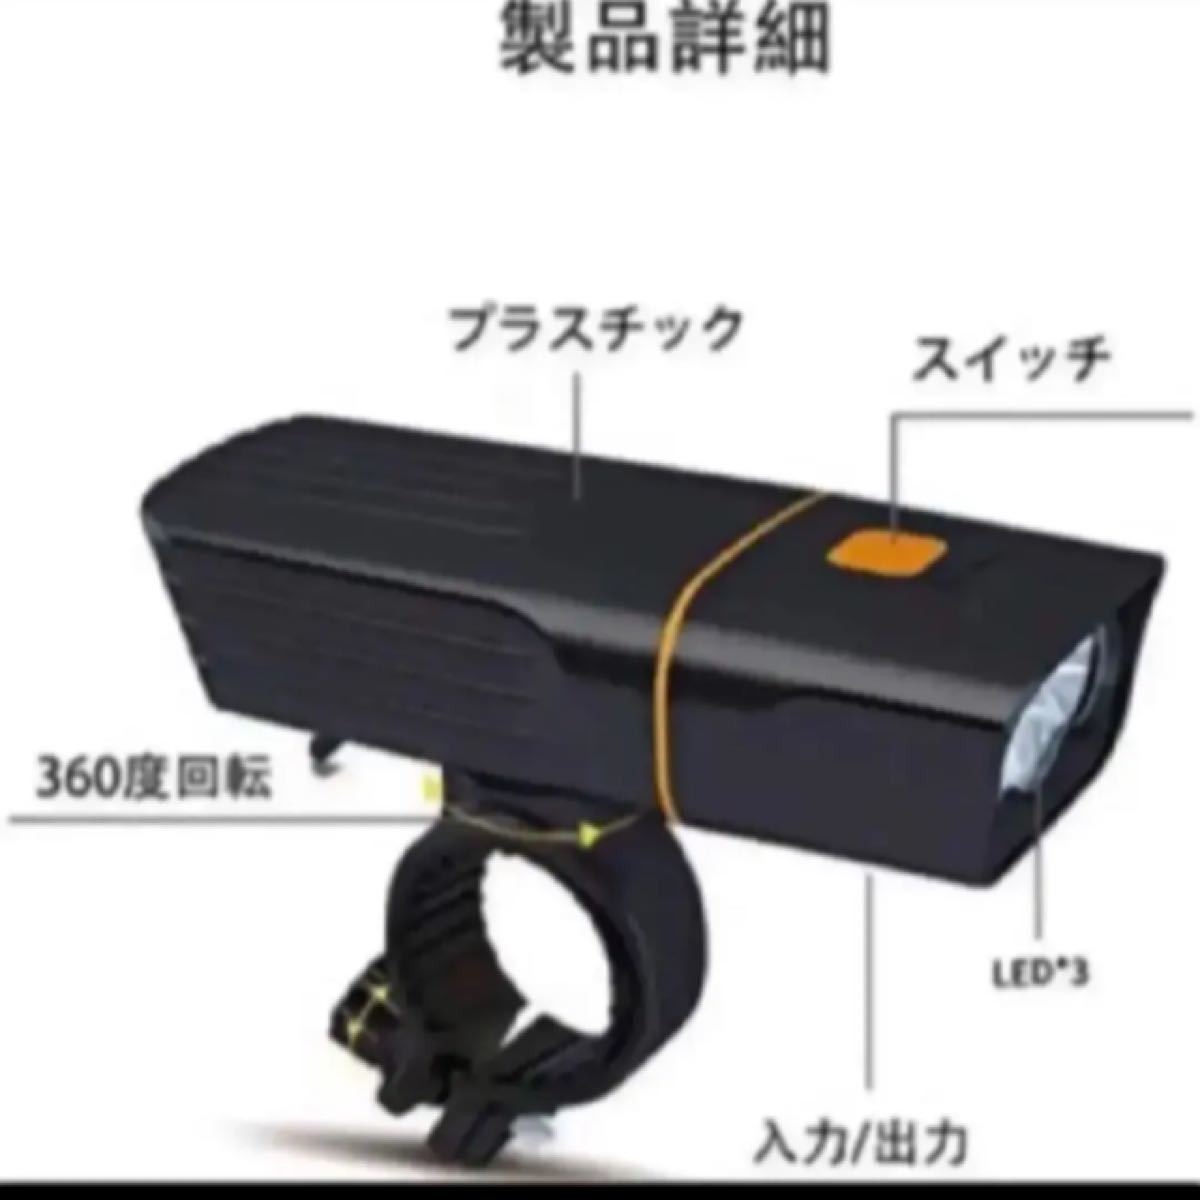 【2021初登場】自転車ライト 1000ルーメン テールライト付き 高輝度大容量 LED自転車ヘッドライト USB充電式 